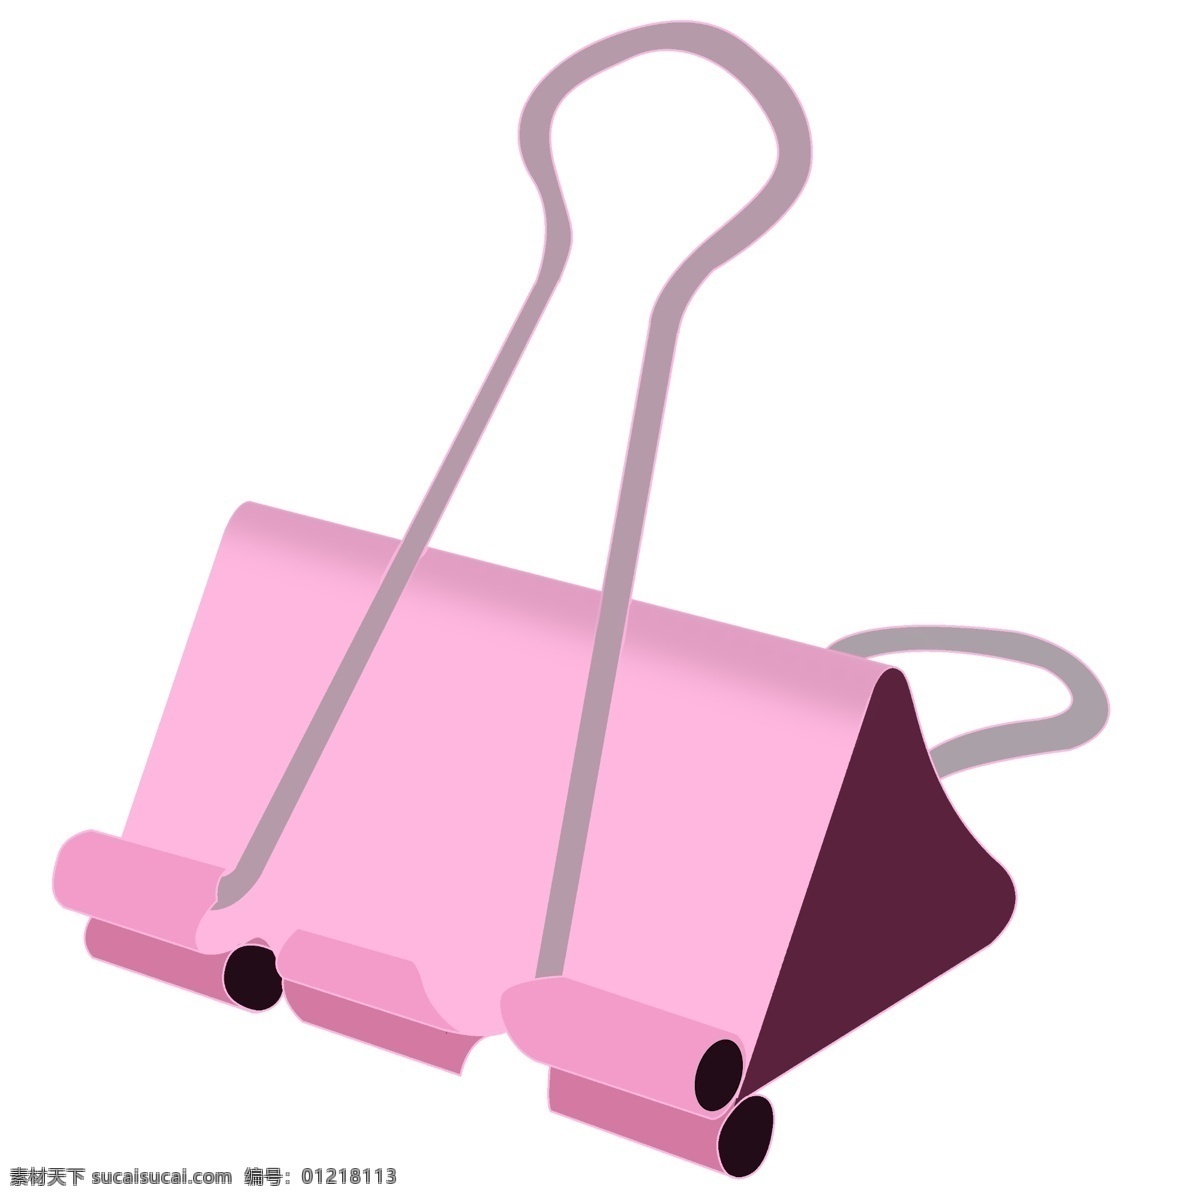 芭比 粉 铁 夹子 插画 粉色的夹子 学习用具 夹子插画 办公用品 大夹子 一个夹子插画 漂亮的夹子